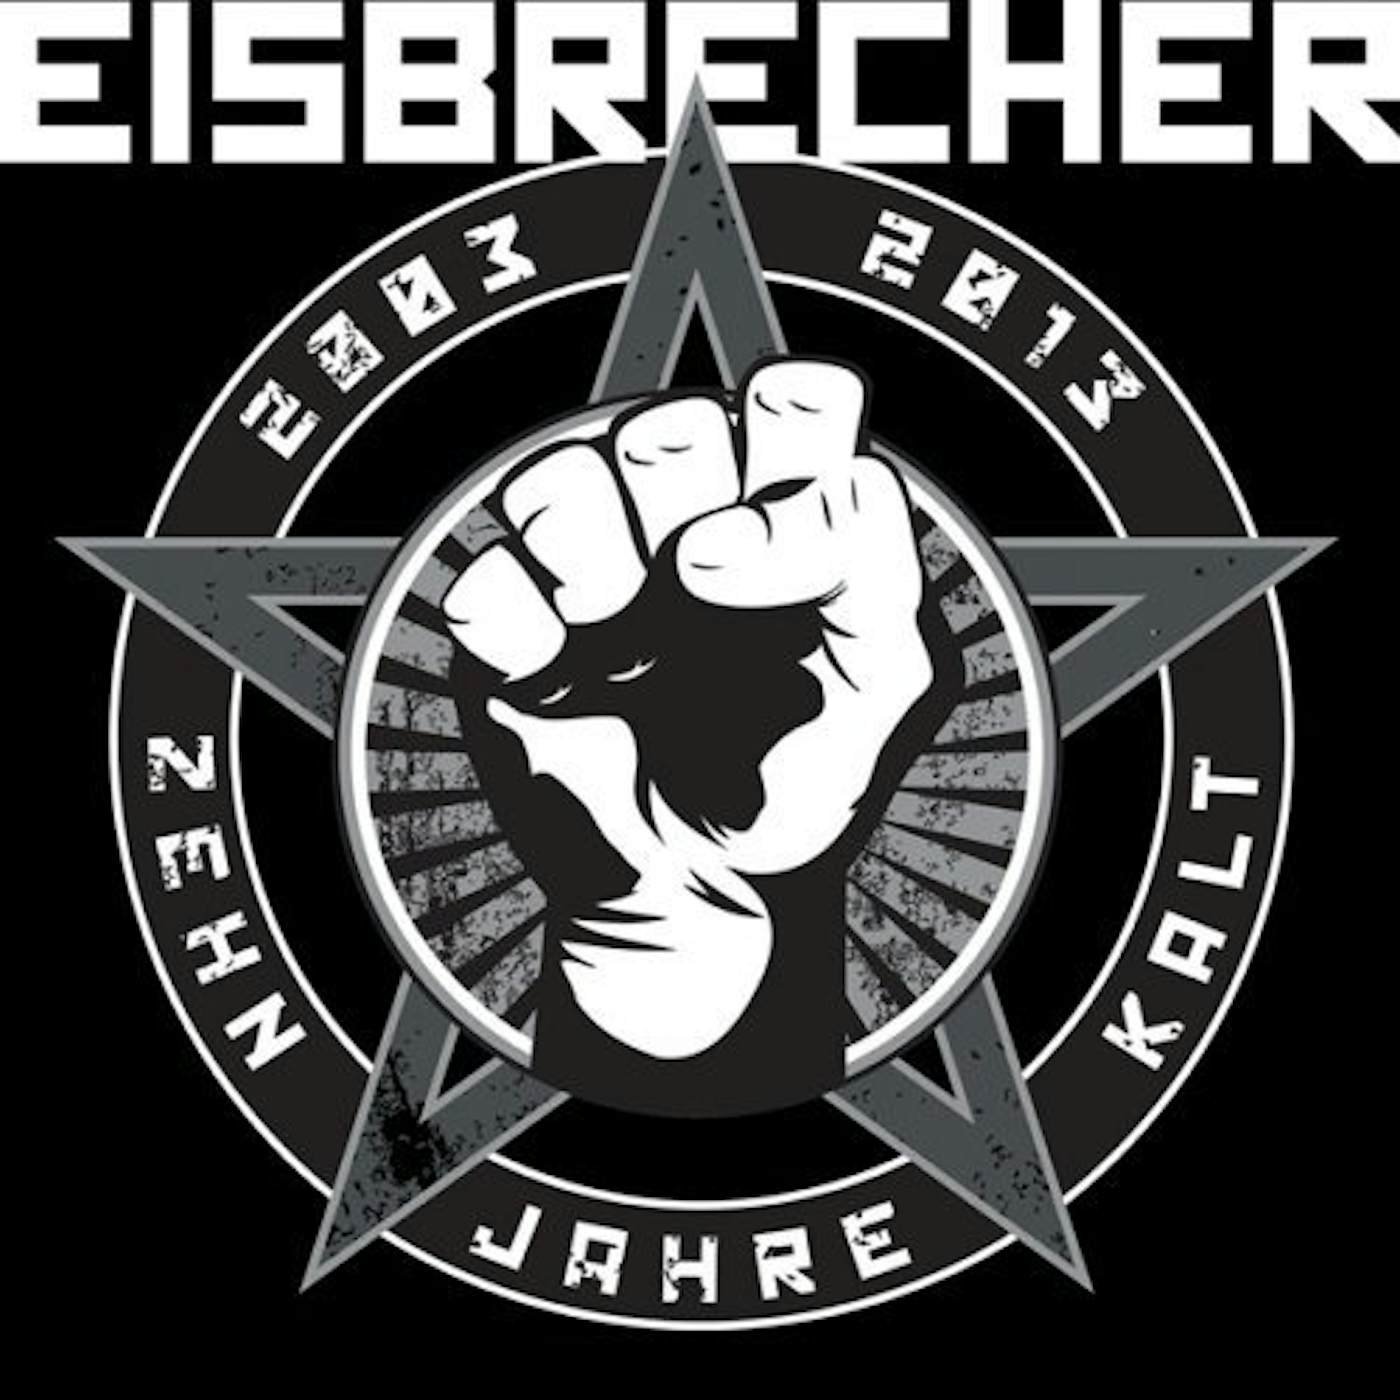 Eisbrecher rot wie liebe. Группа Eisbrecher. Группа Eisbrecher лого. Eisbrecher Постер. Обложки группы Eisbrecher.